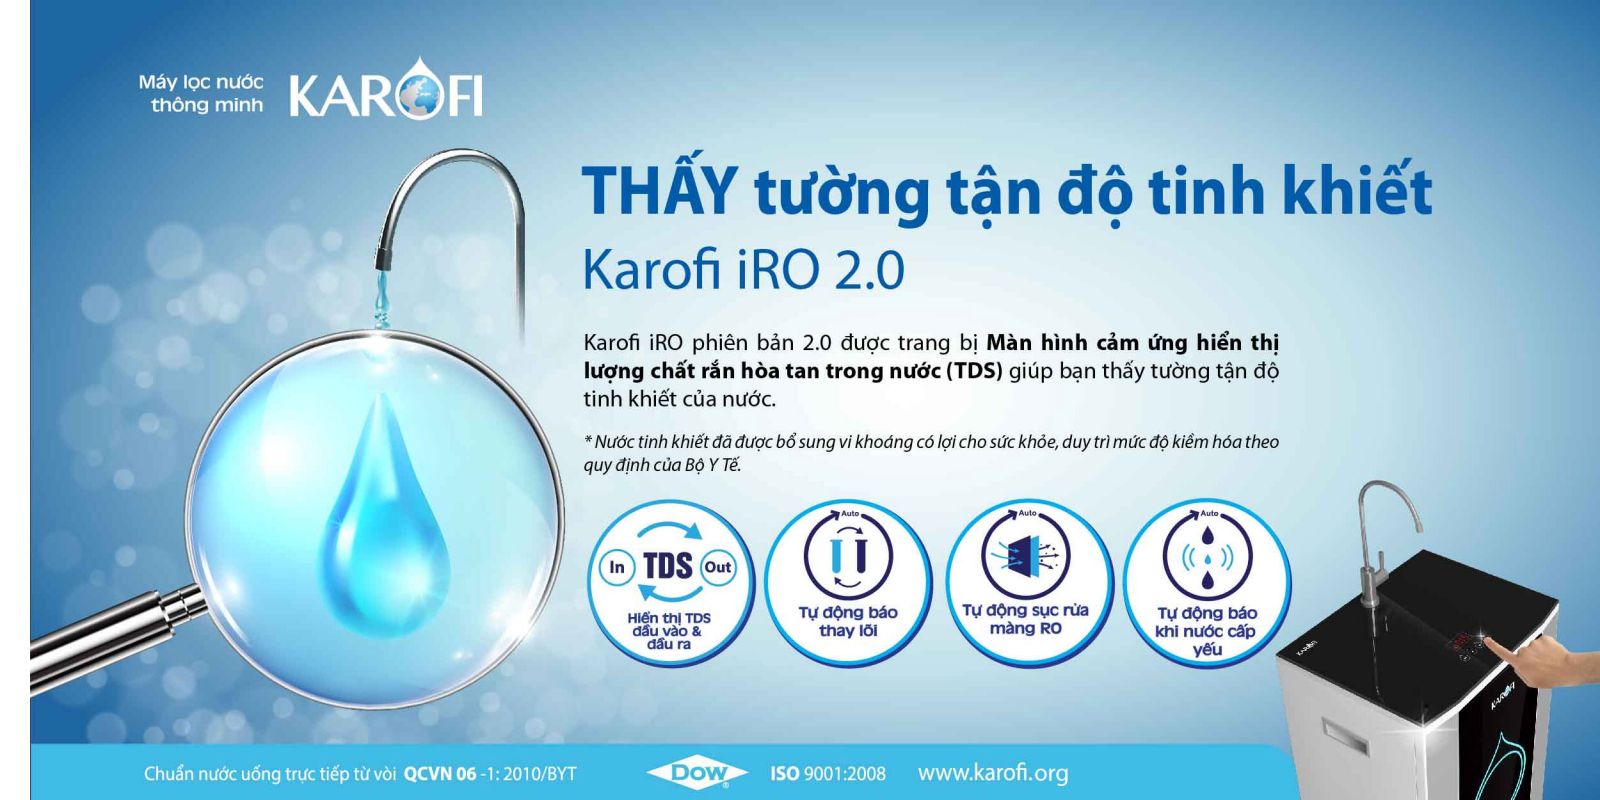 Máy lọc nước Karofi IRO 2.0 7 cấp